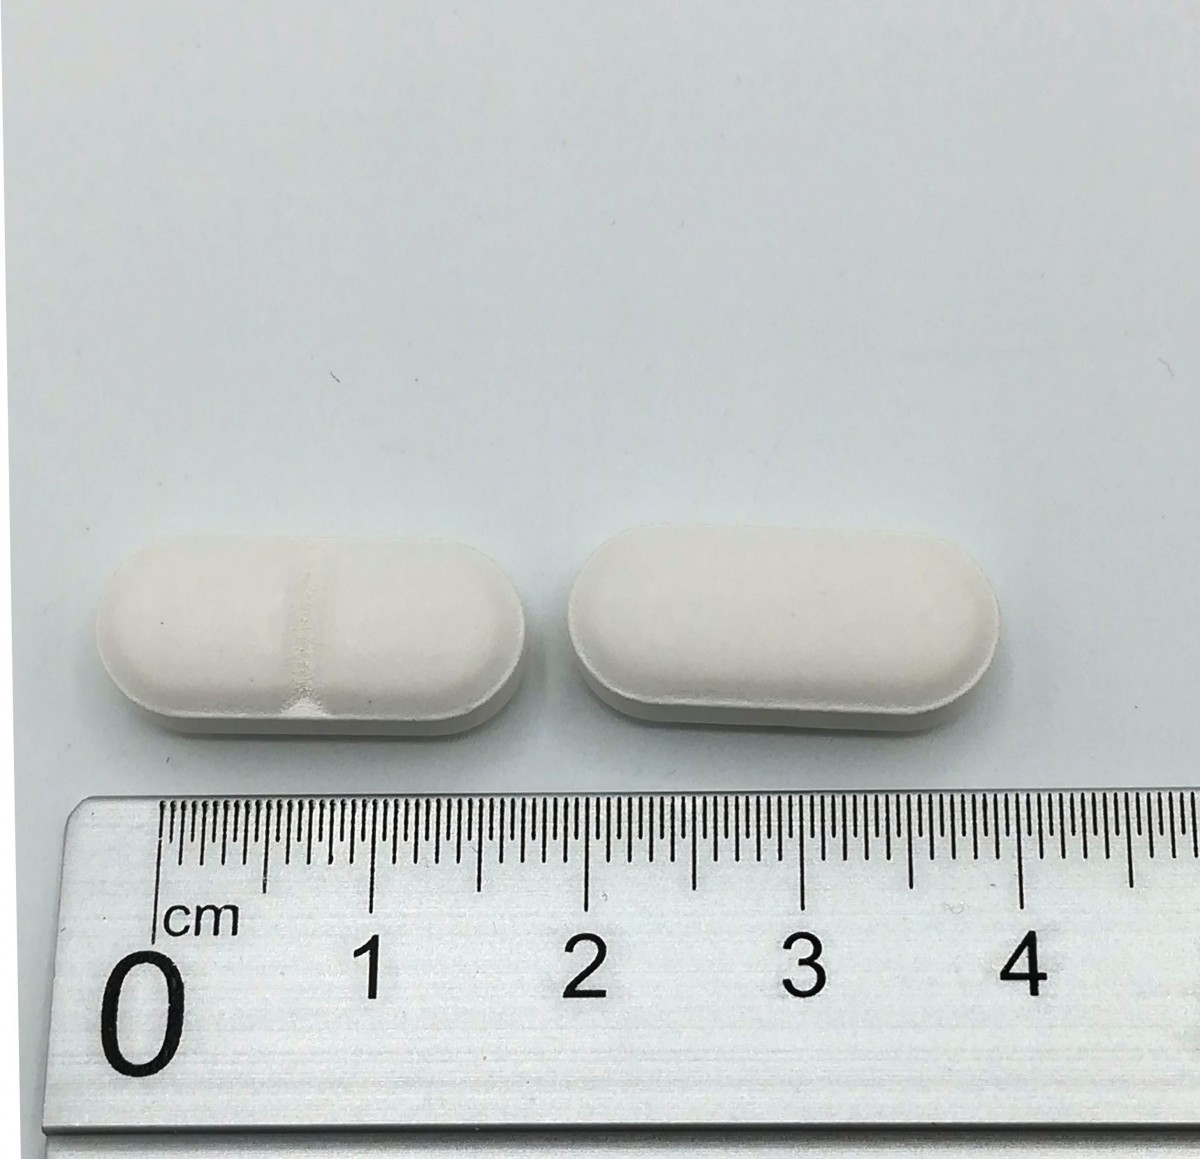 AMOXICILINA/ACIDO CLAVULANICO NORMON 500 mg /125 mg COMPRIMIDOS RECUBIERTOS CON PELICULA EFG, 24 comprimidos fotografía de la forma farmacéutica.